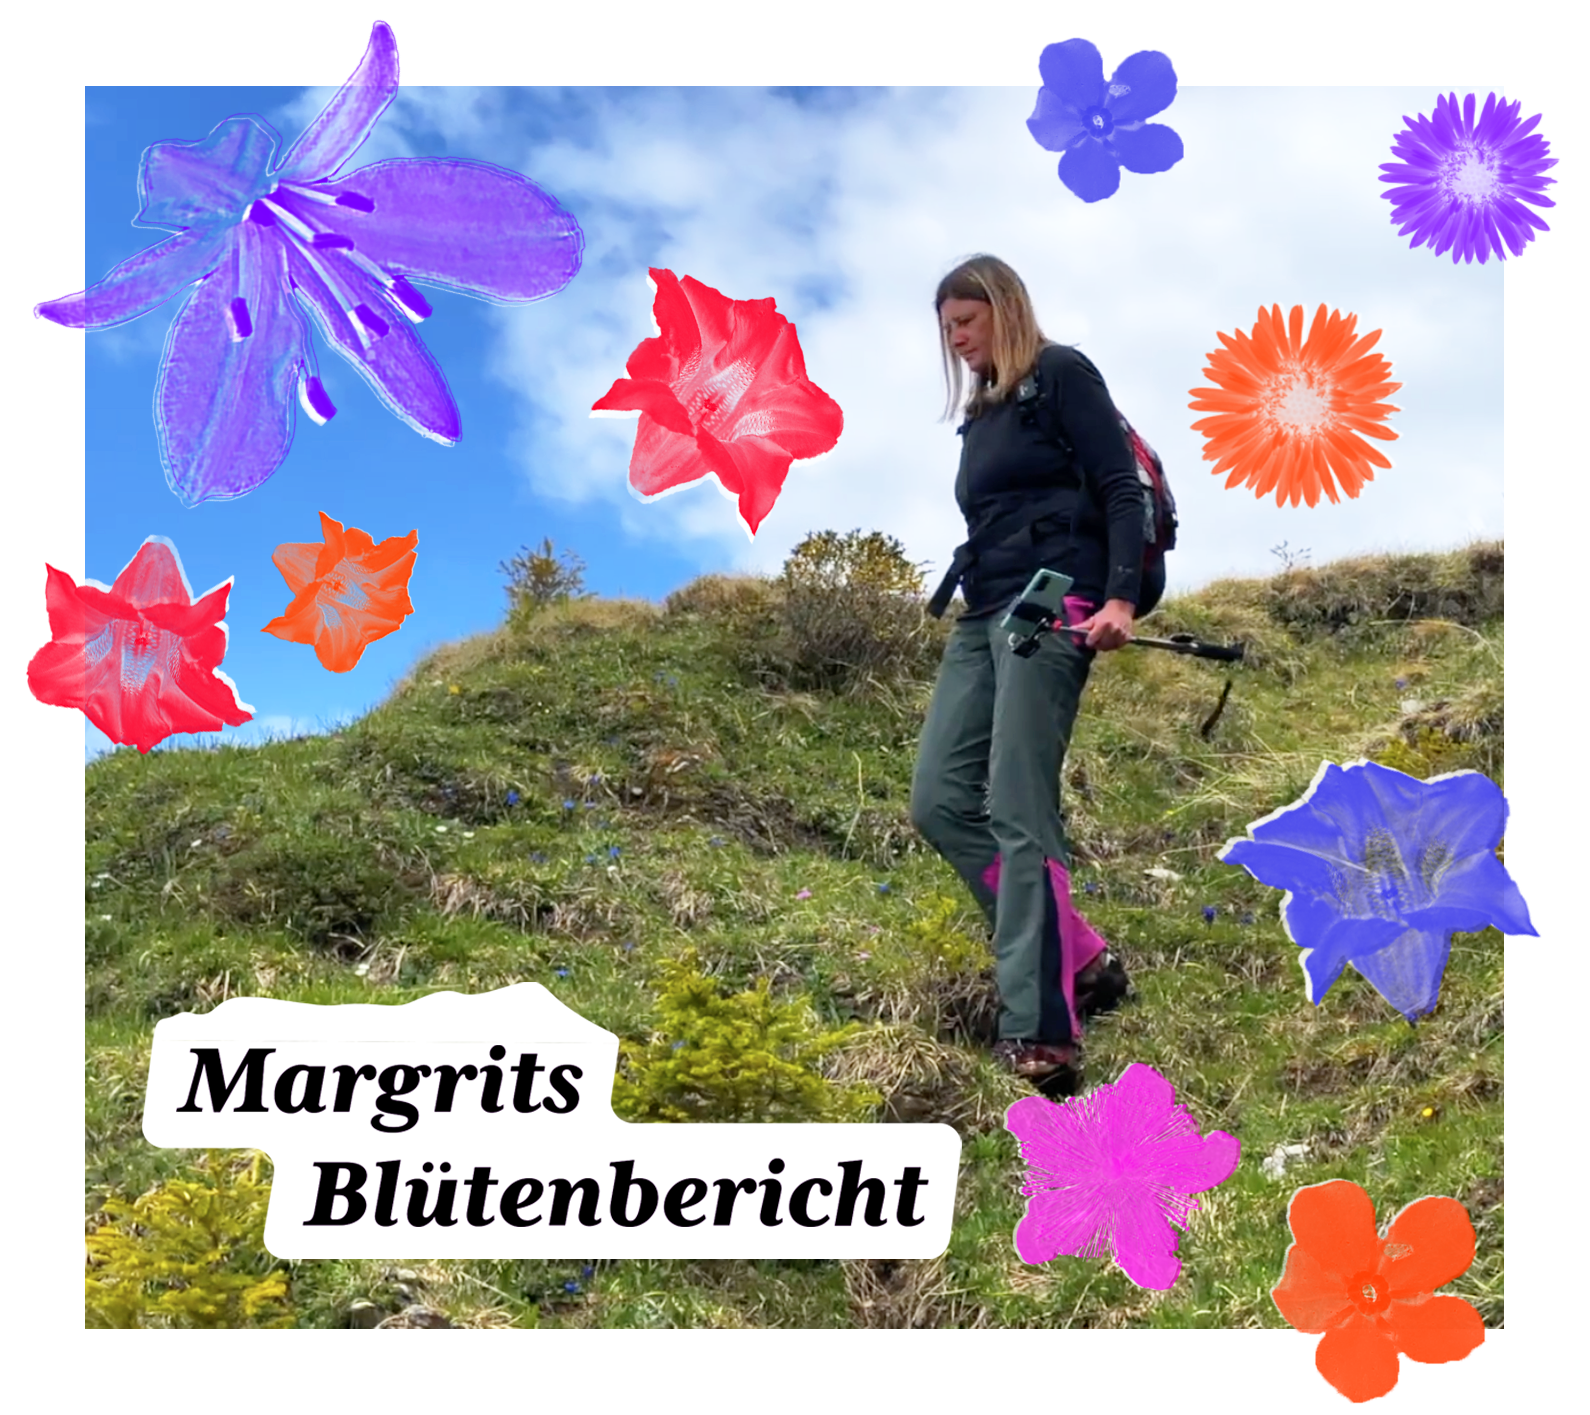 Bluetenbericht - Margrit Dubi